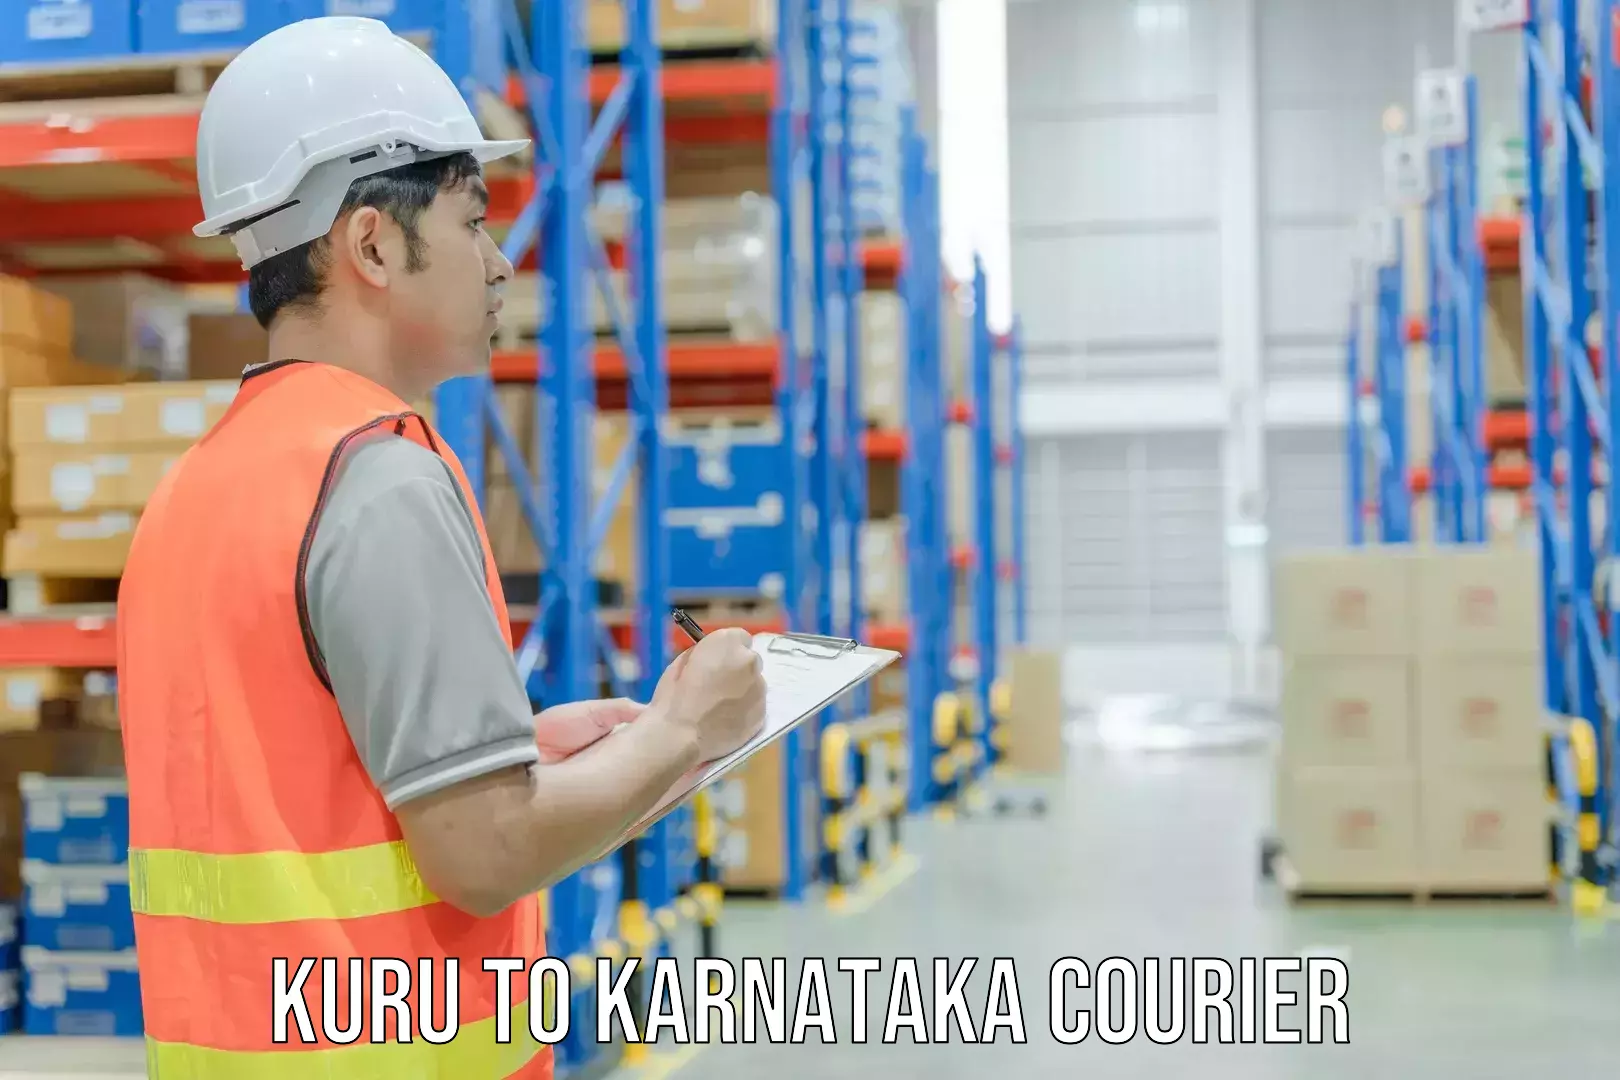 Customer-centric shipping Kuru to Karnataka